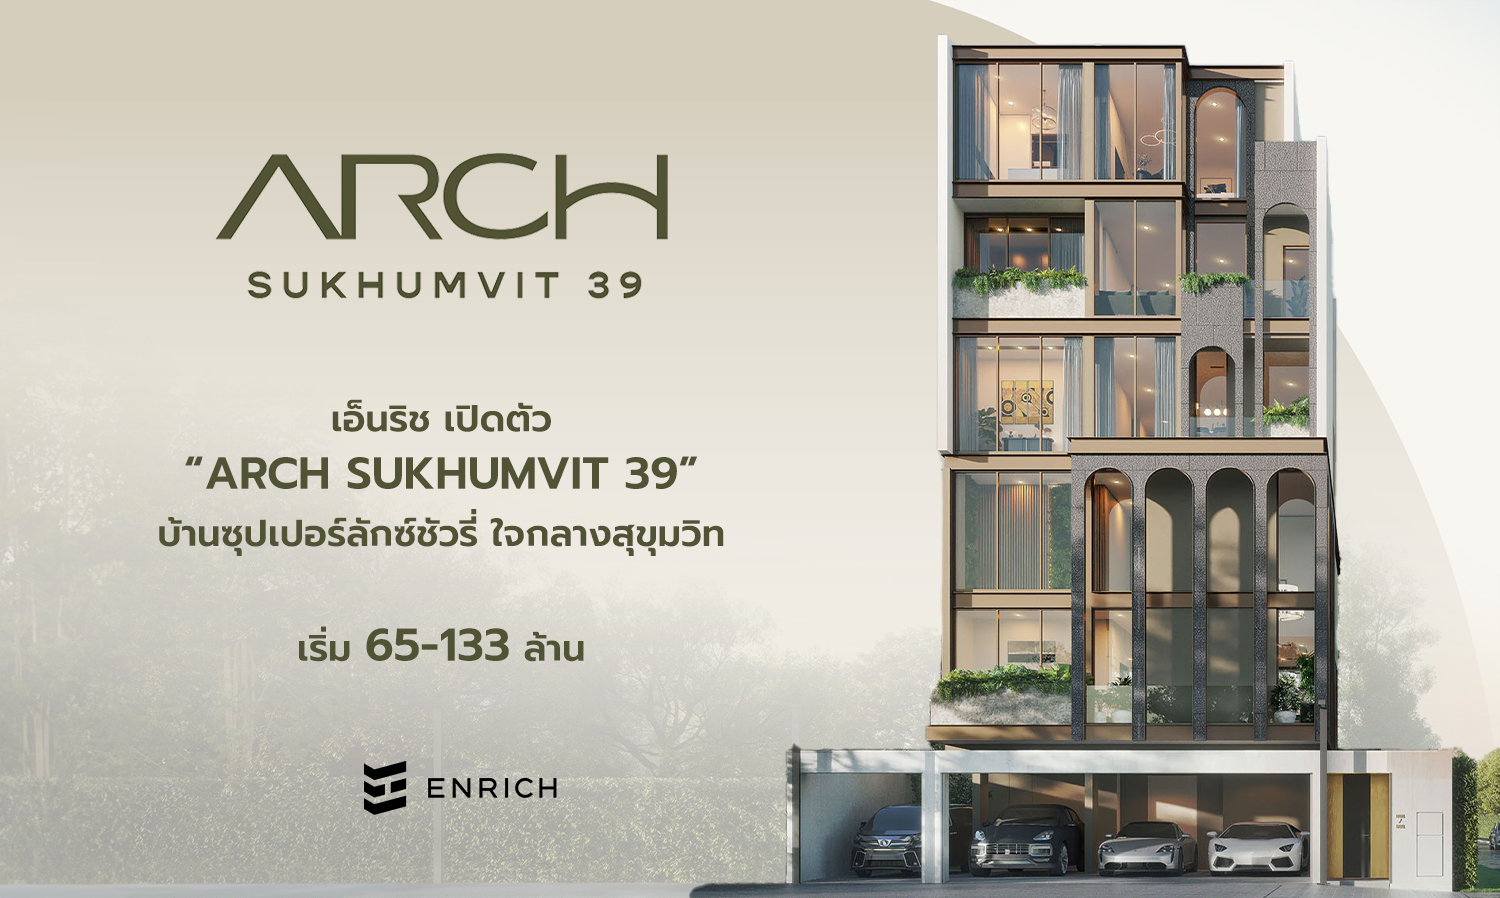 ARCH Sukhumvit 39 บ้านซุปเปอร์ลักซ์ชัวรี่ ใจกลางสุขุมวิท เริ่ม 65-133 ล้านบาท